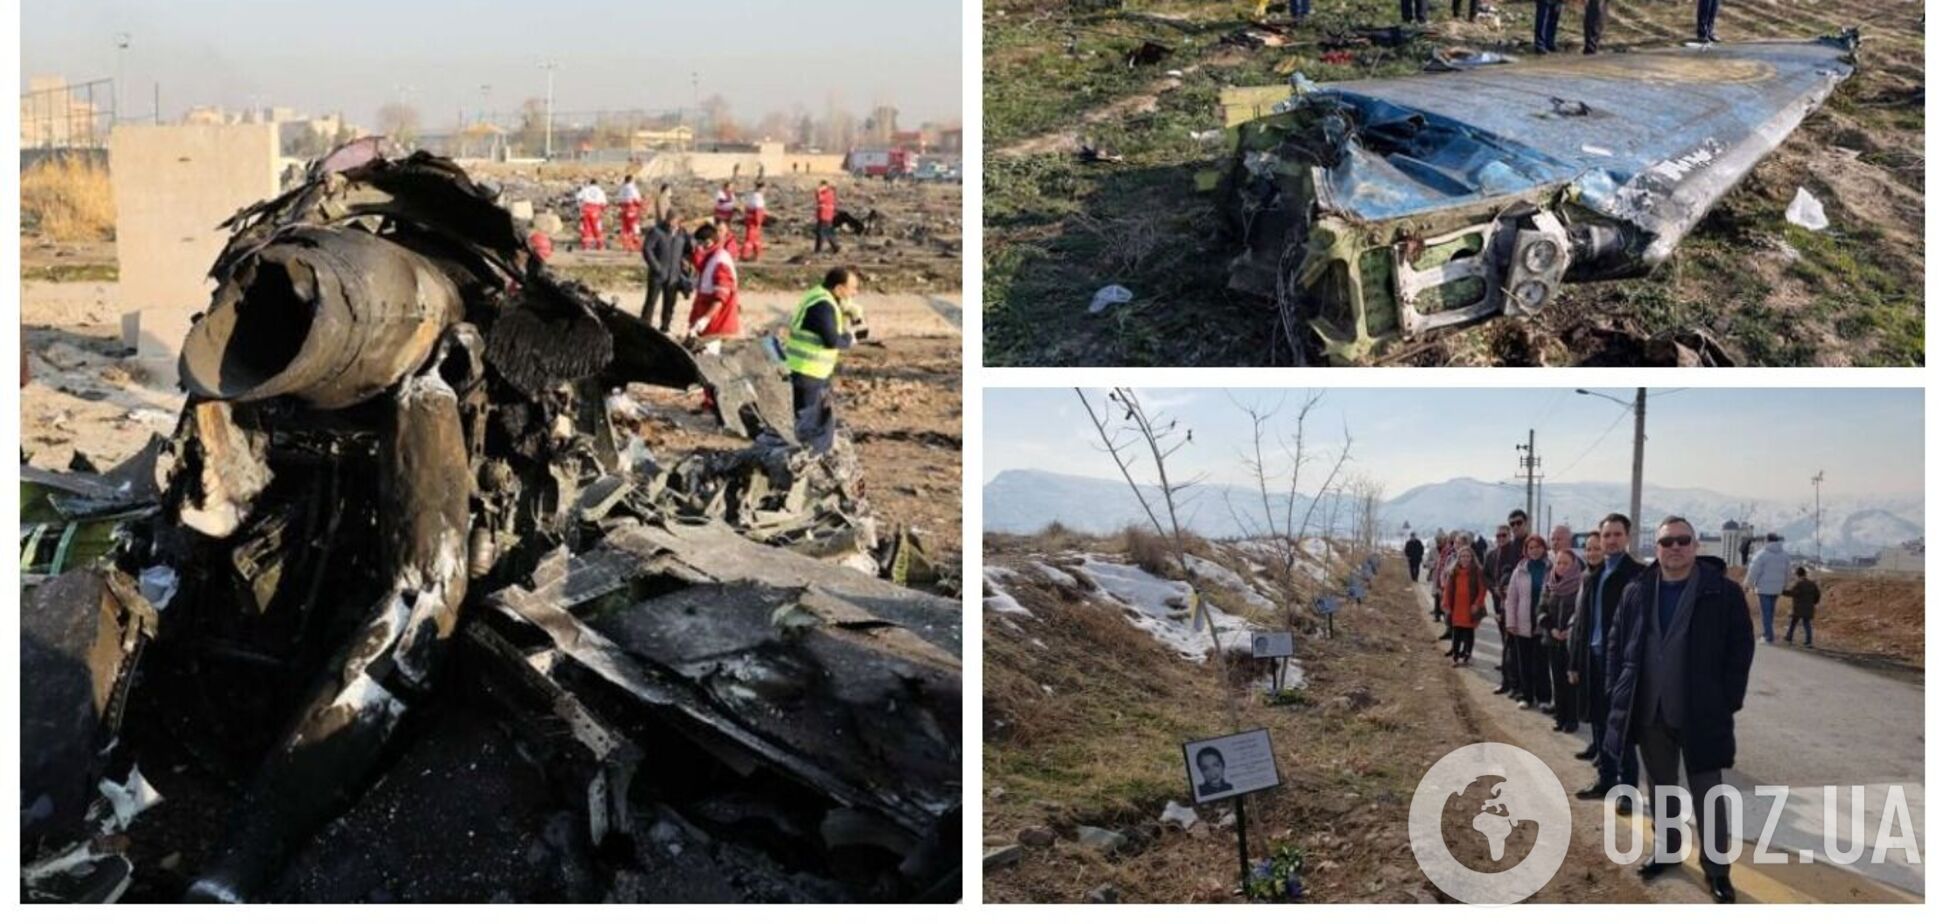 Названы имена 9 иранских военных, которые могут быть причастны к сбитию украинского самолета